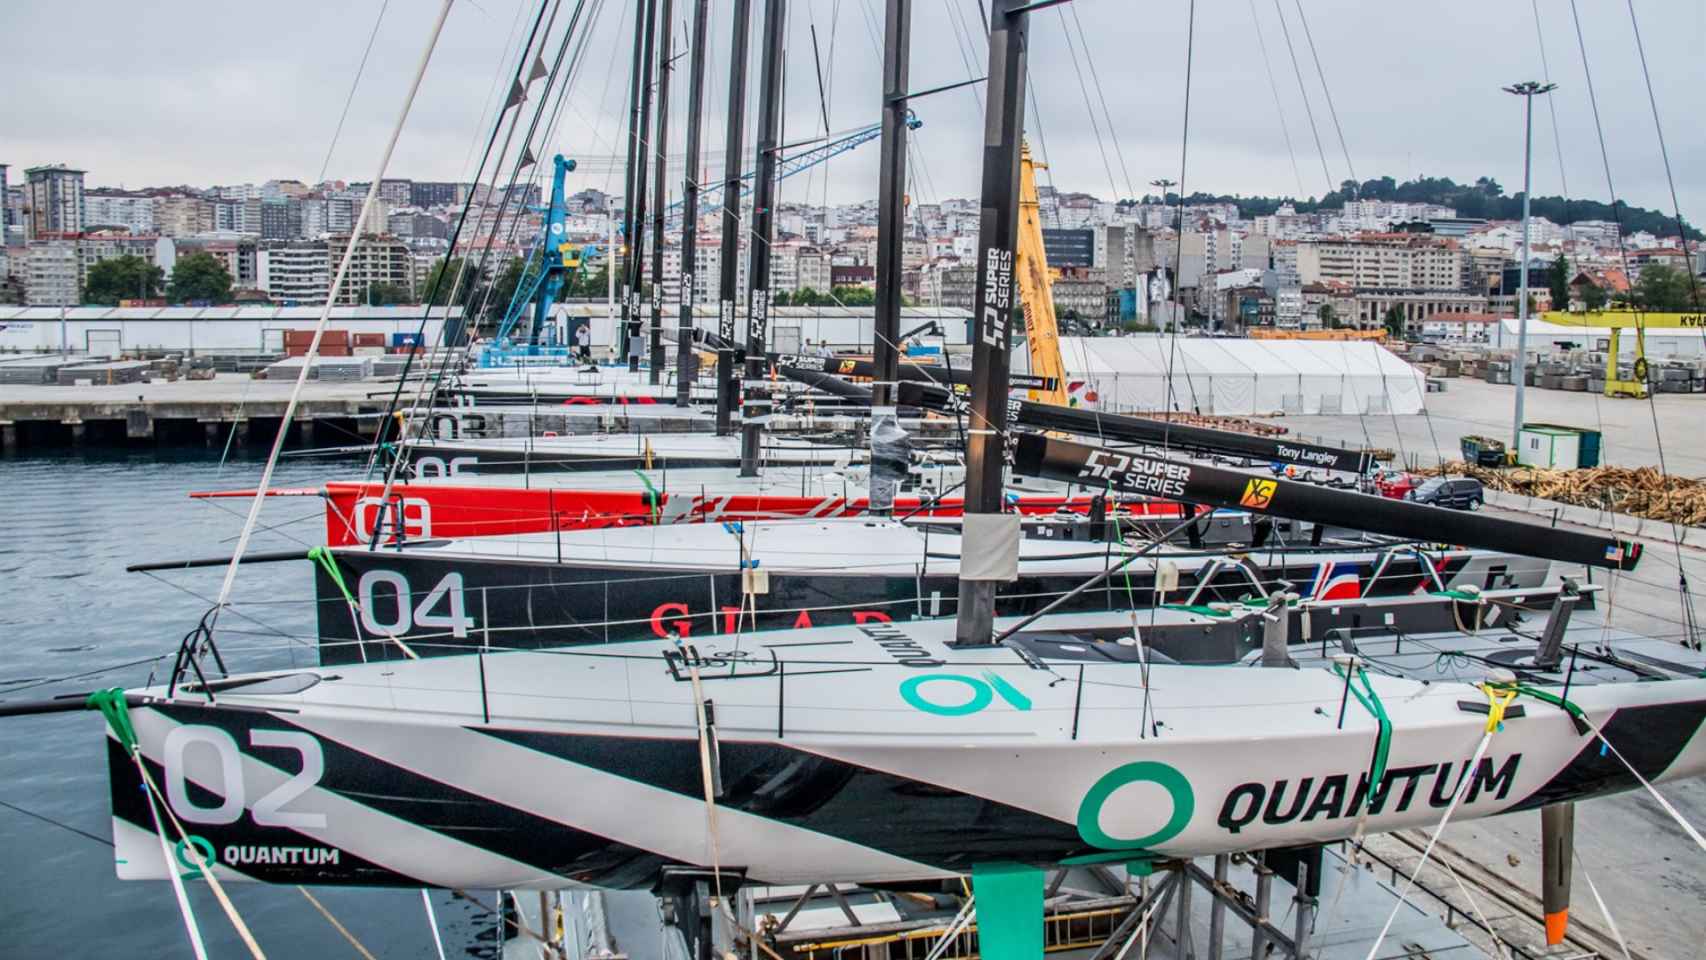 Los TP52 que competirán en la Baiona Sailing Week a bordo del carguero en Vigo.